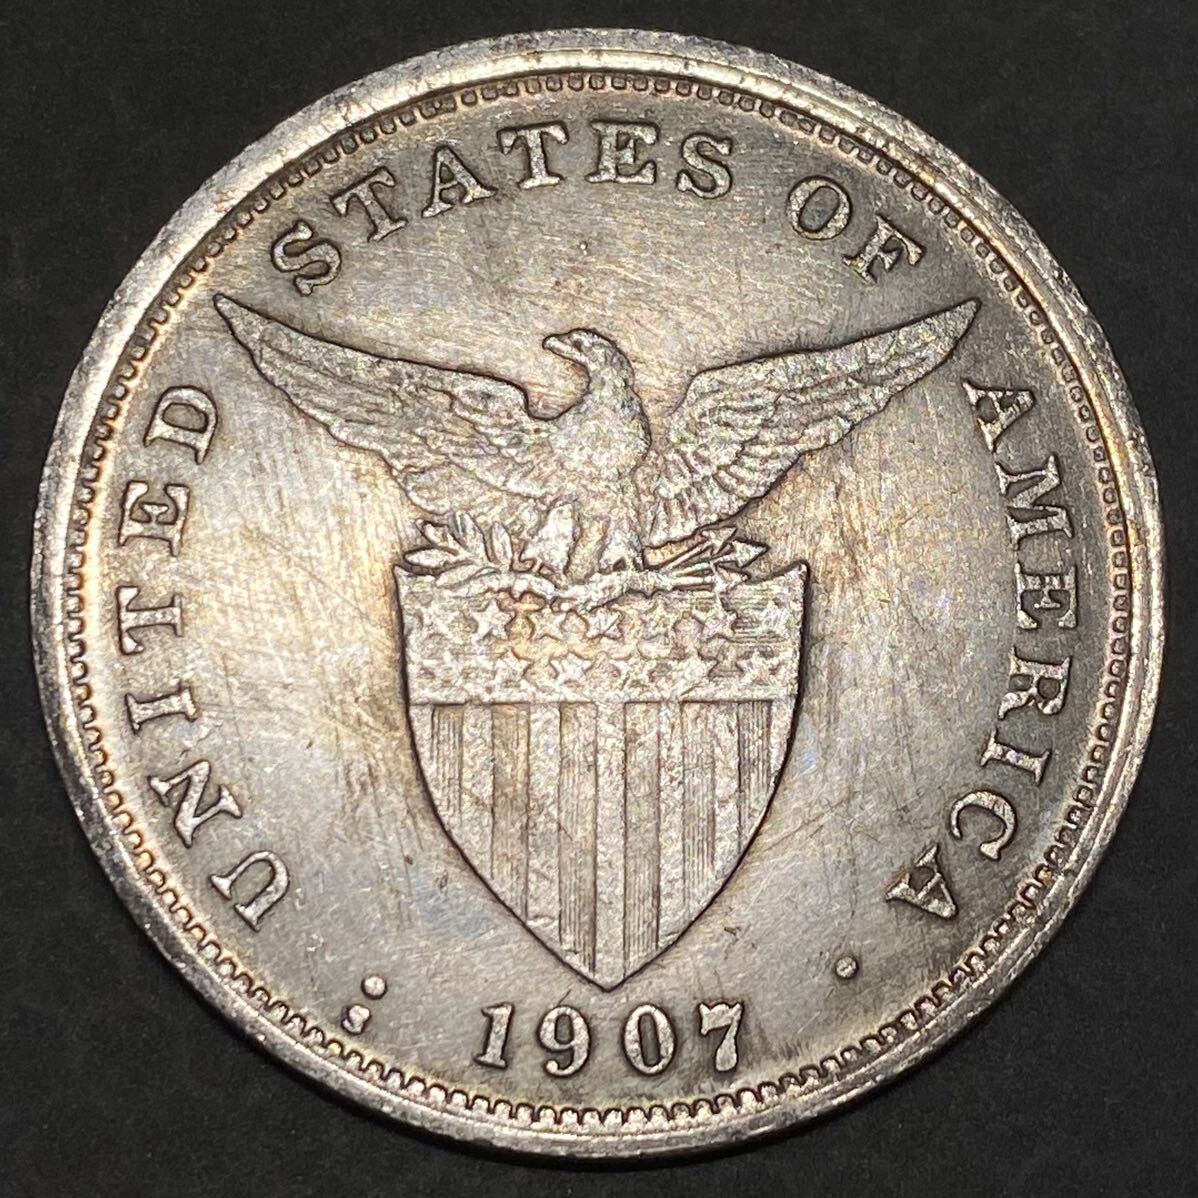 米領フィリピン古銭 約21.48g 1ペソ銀貨 一円貨幣 硬貨骨董品コインコレクション の画像2